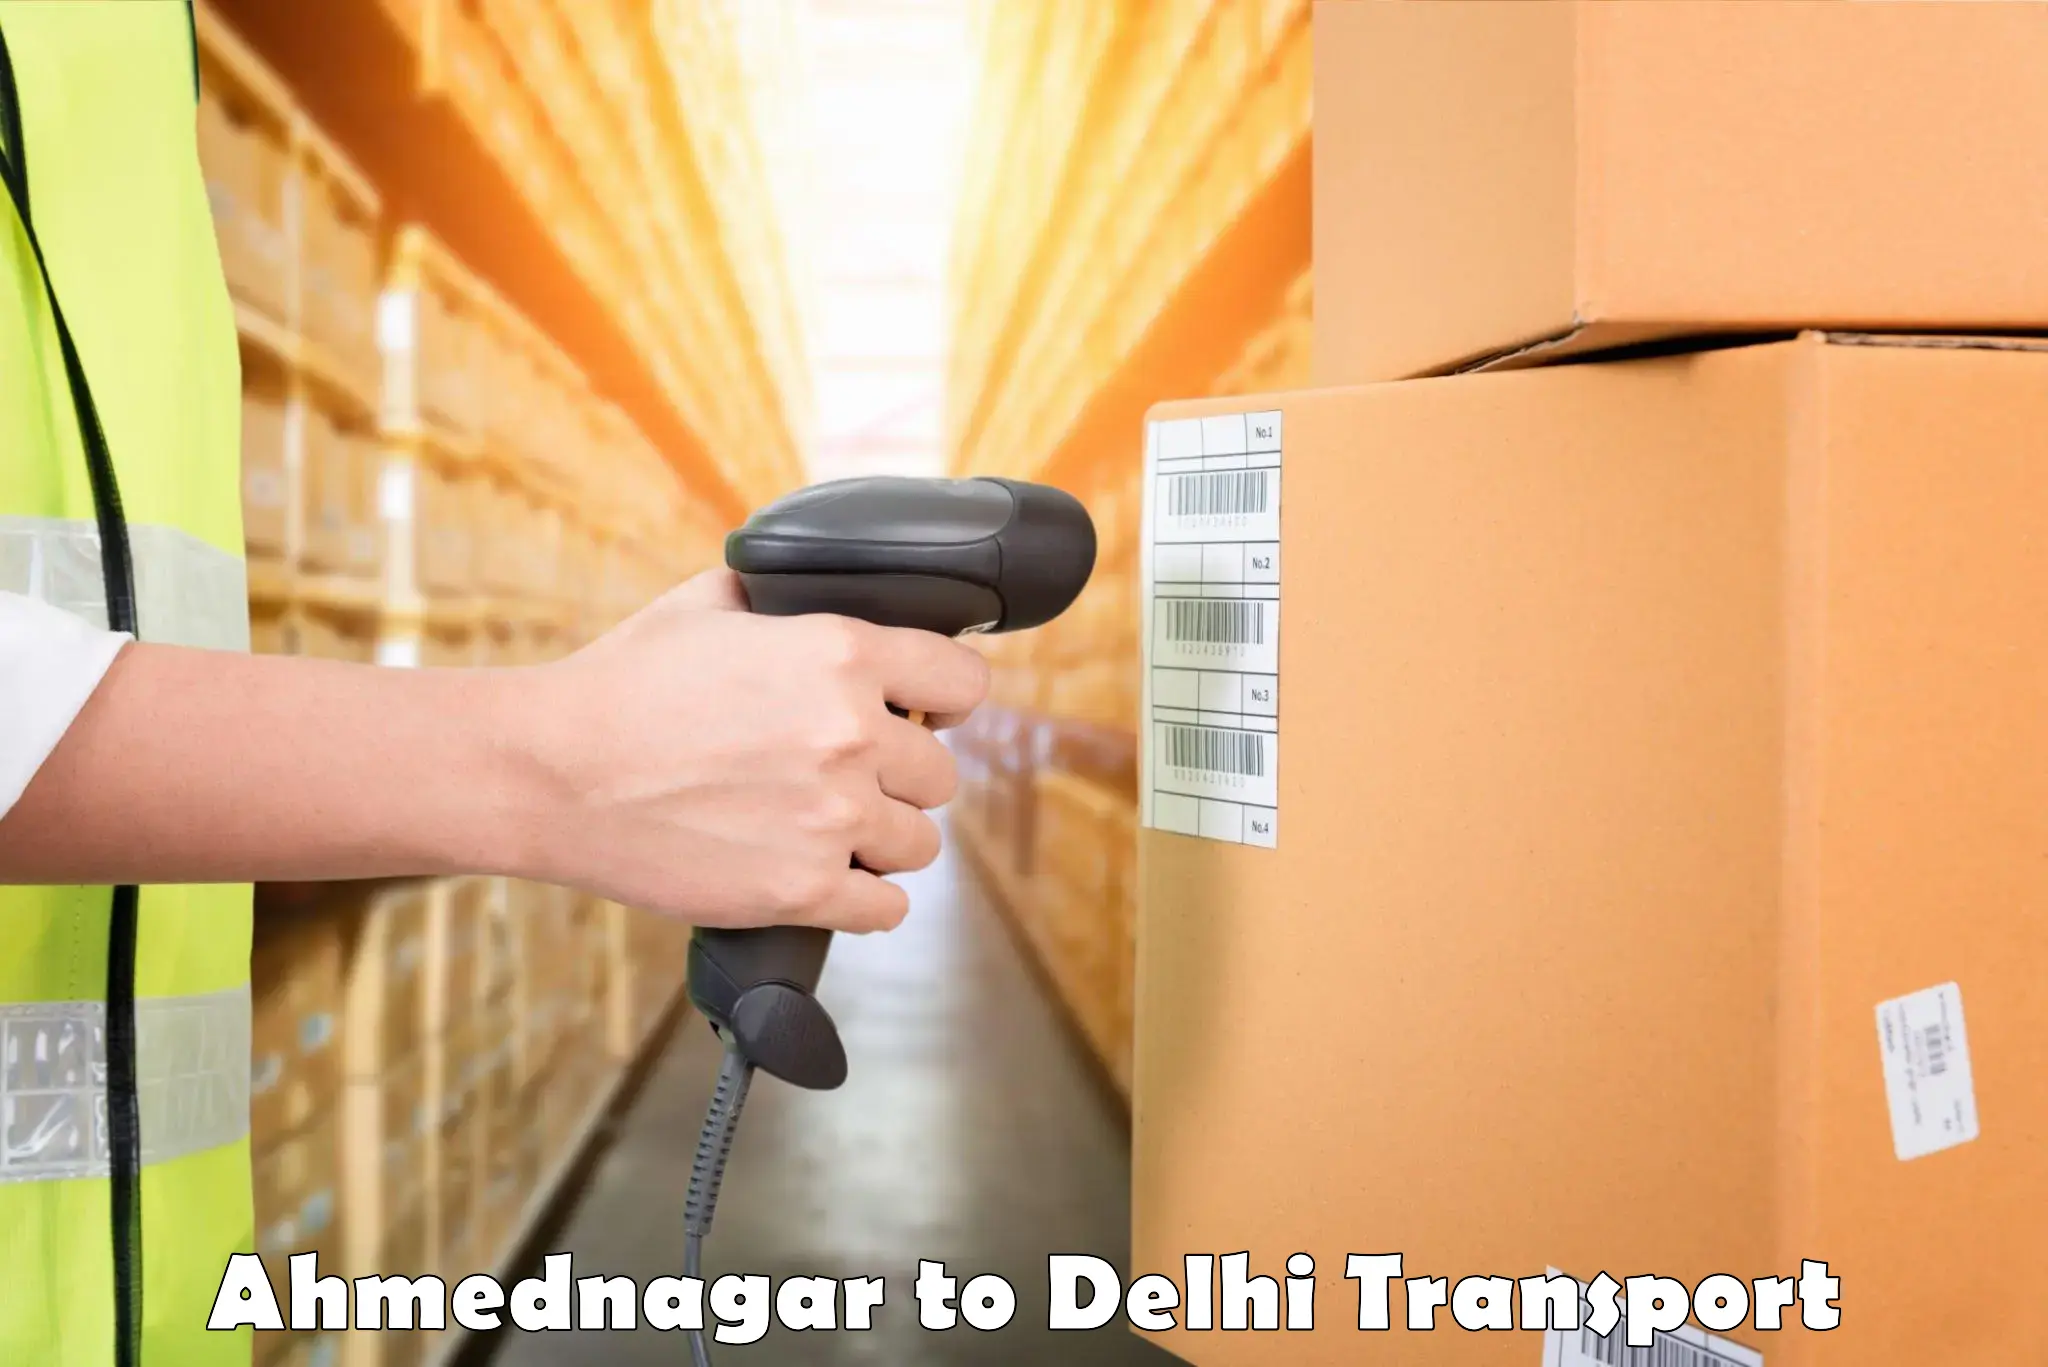 Cargo transport services Ahmednagar to Delhi